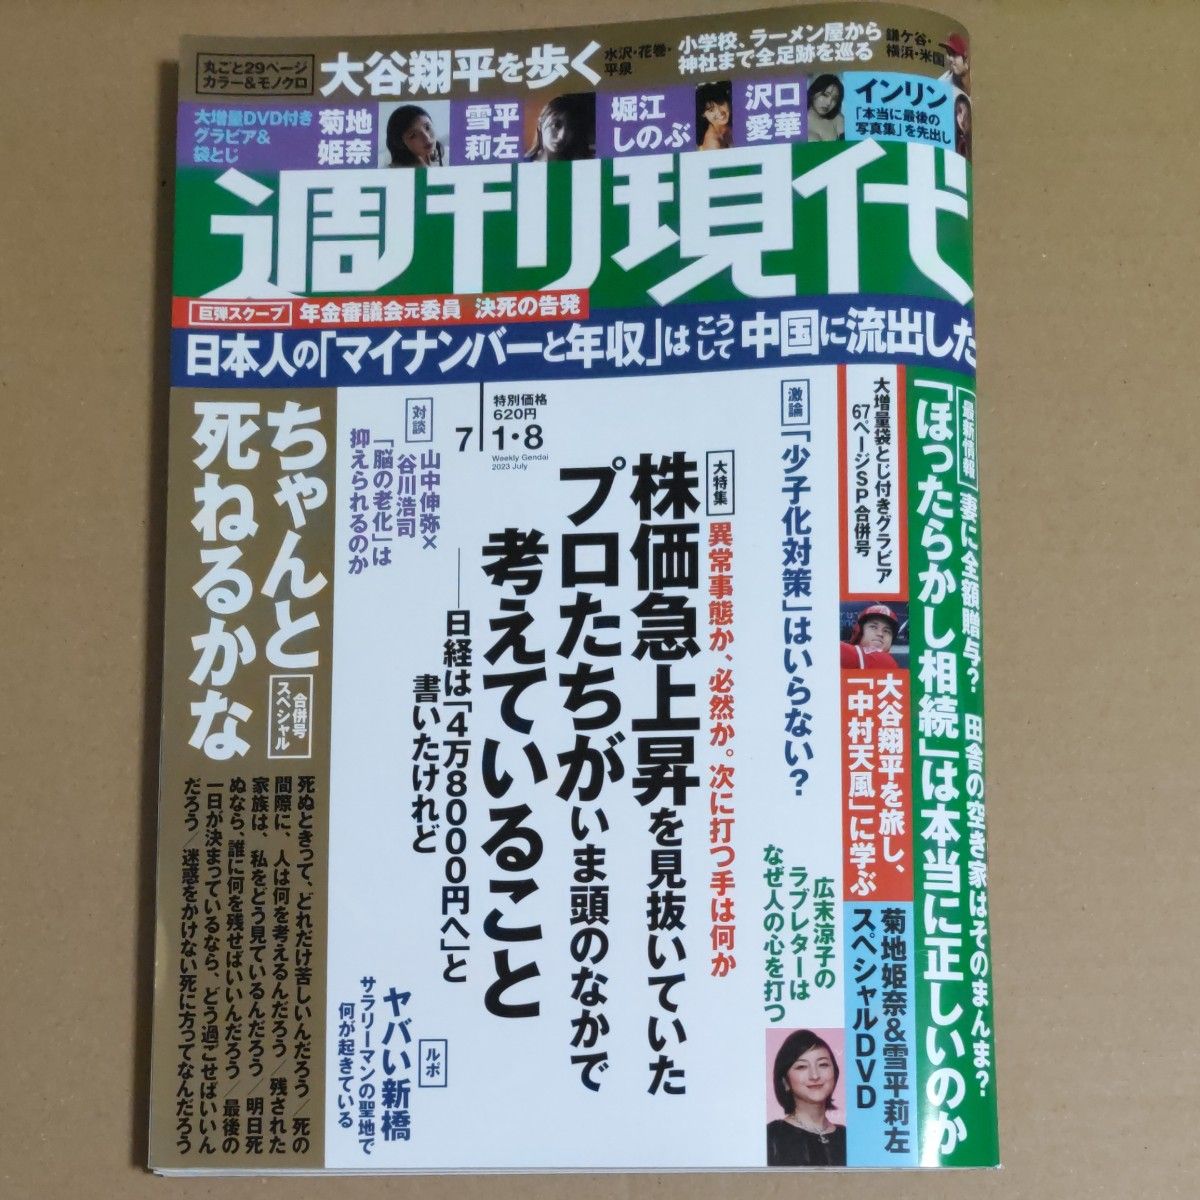 週刊現代7/1・8号(菊地姫奈・雪平莉左付録DVD完備)未読品です。